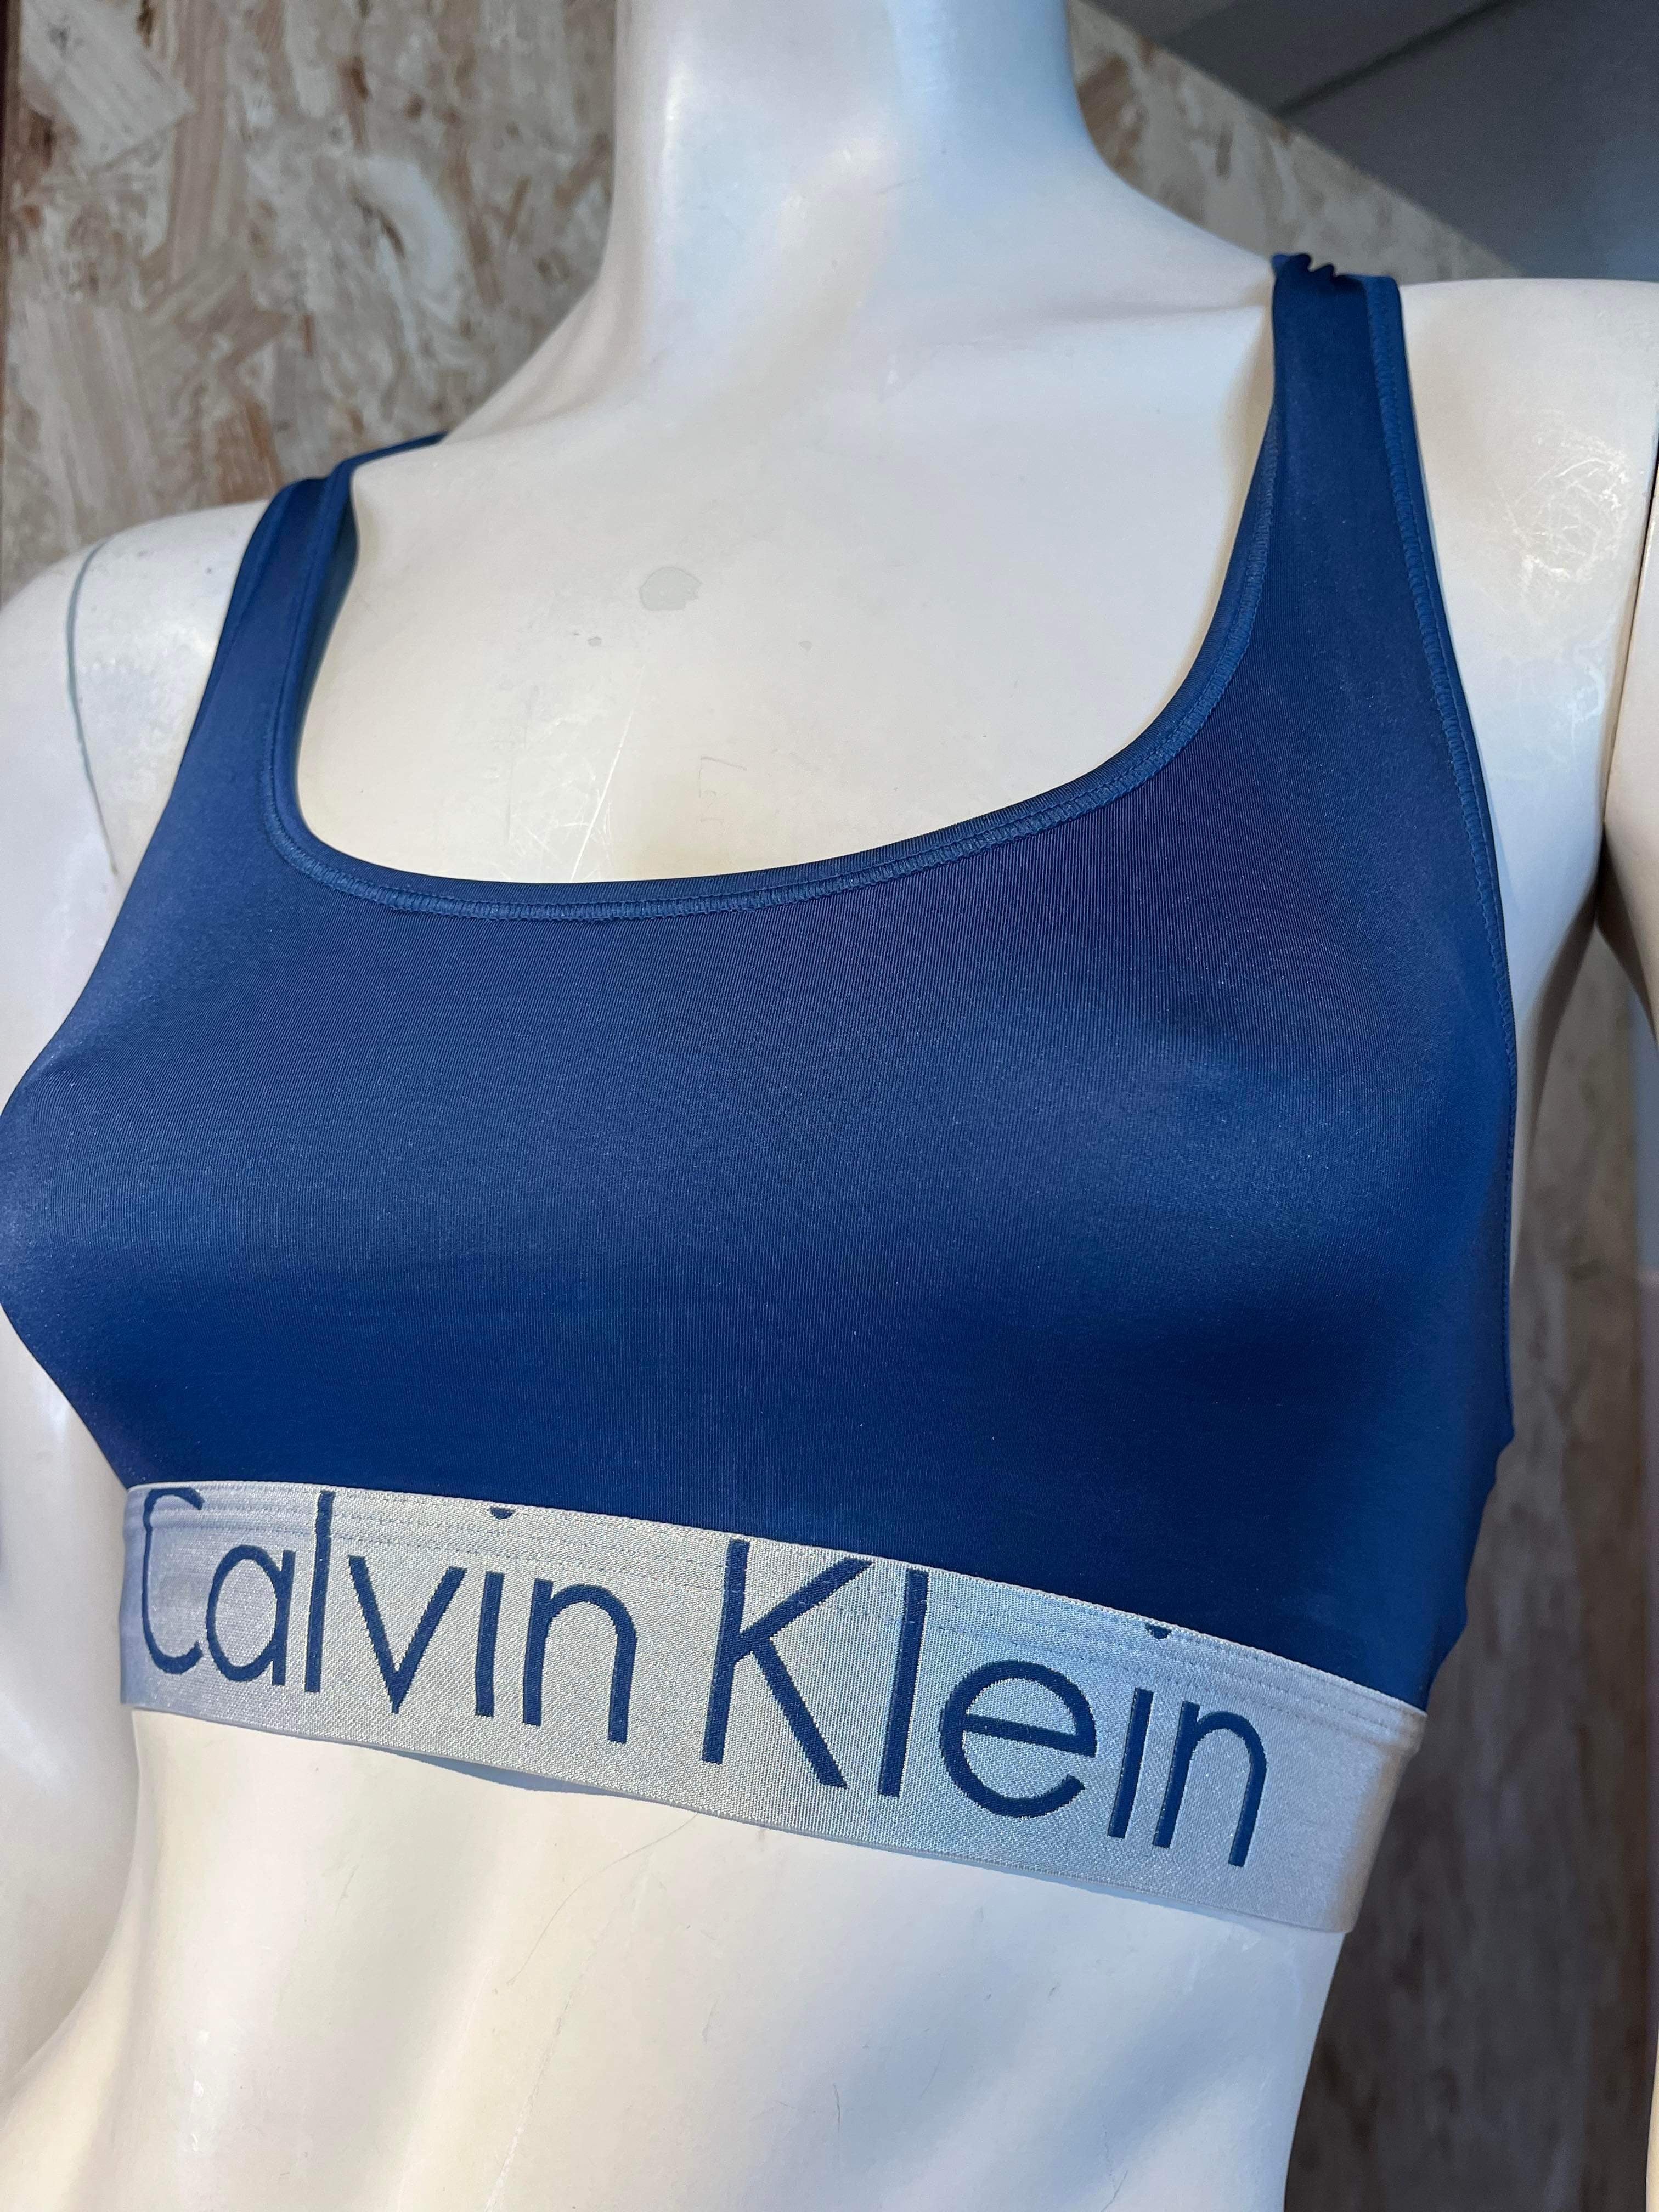 Calvin Klein - Top - Size: M